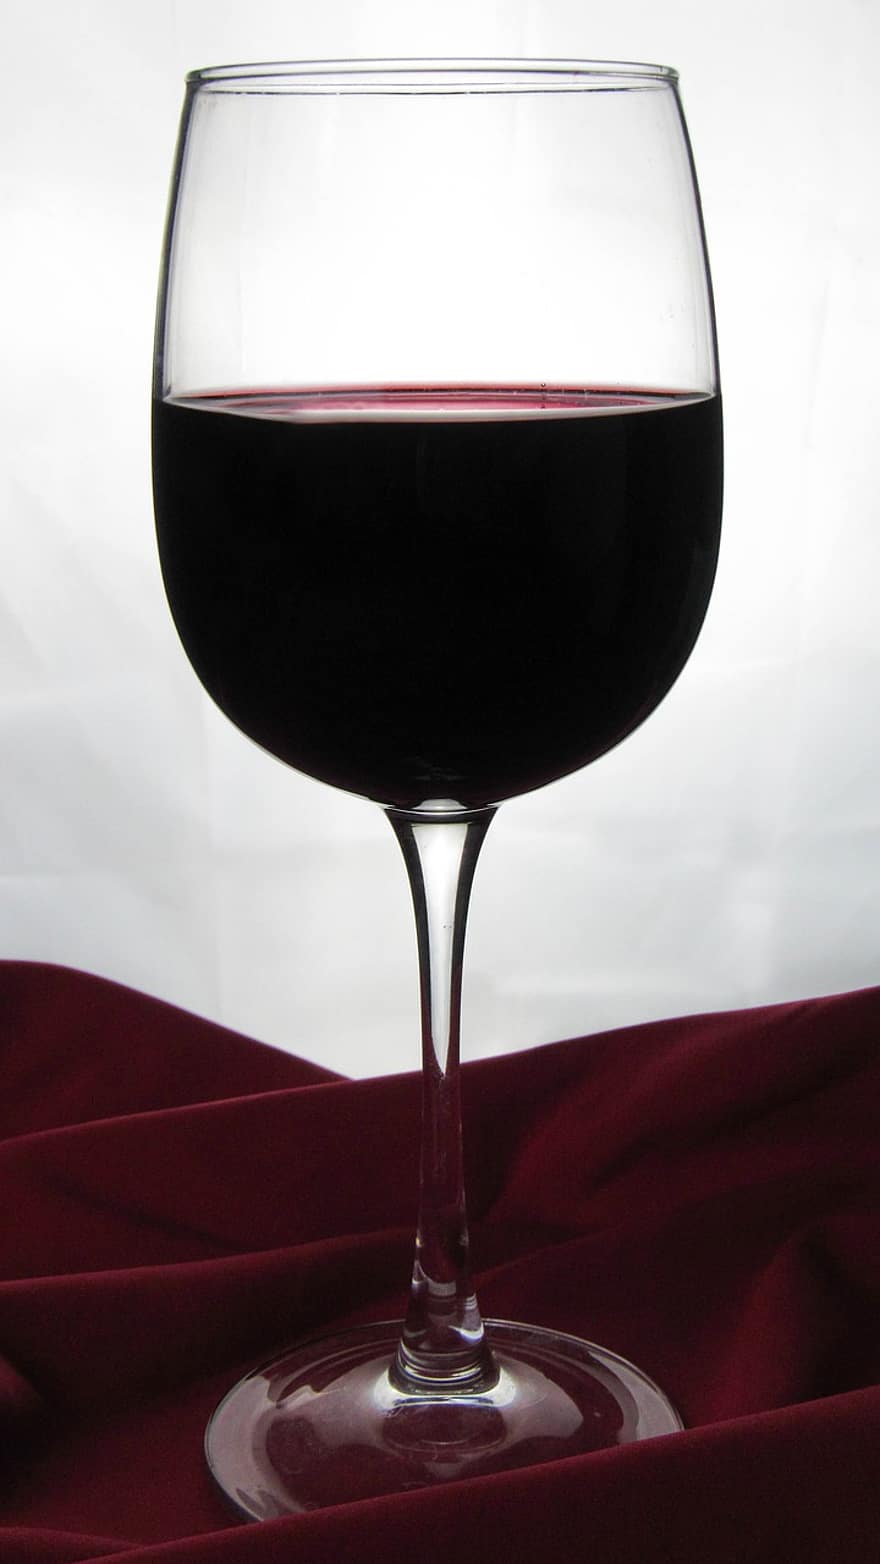 wijn, wijnglas, alcohol, glas, rode wijn, drinken, sterke drank, drank, drinkglas, vloeistof, detailopname